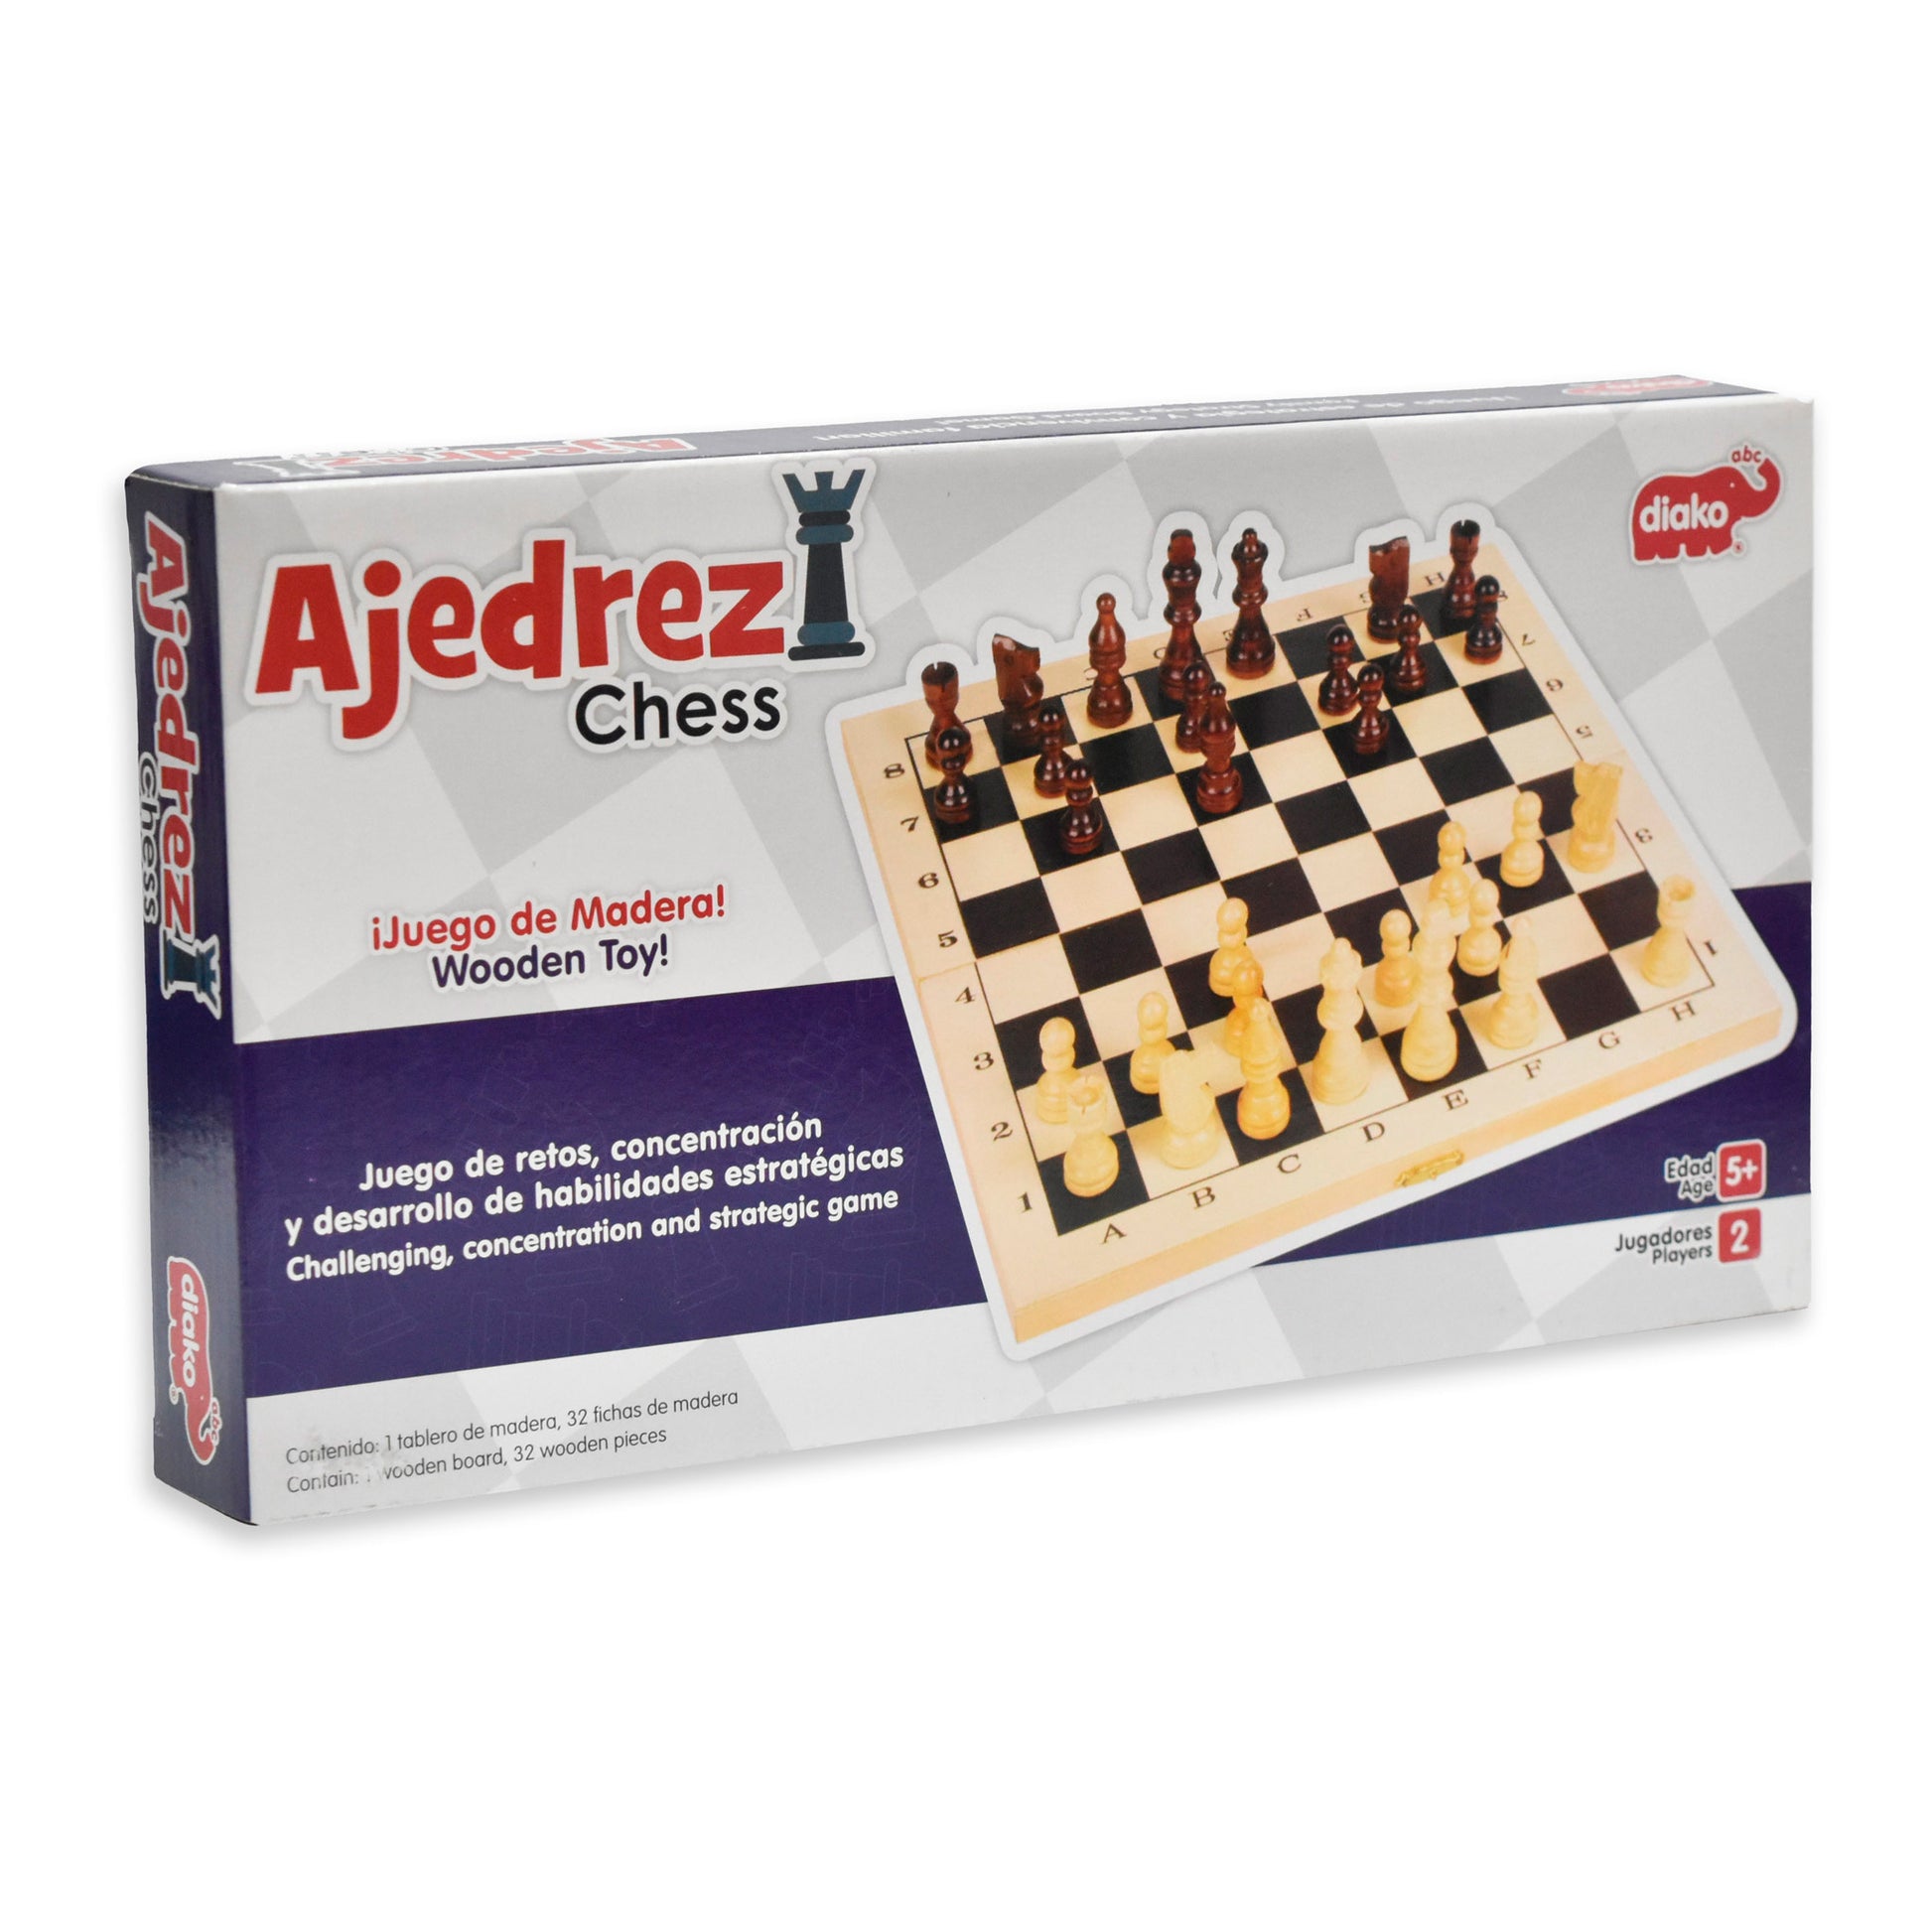 Juega gratis al ajedrez online con amigos y familiares - Chess.com